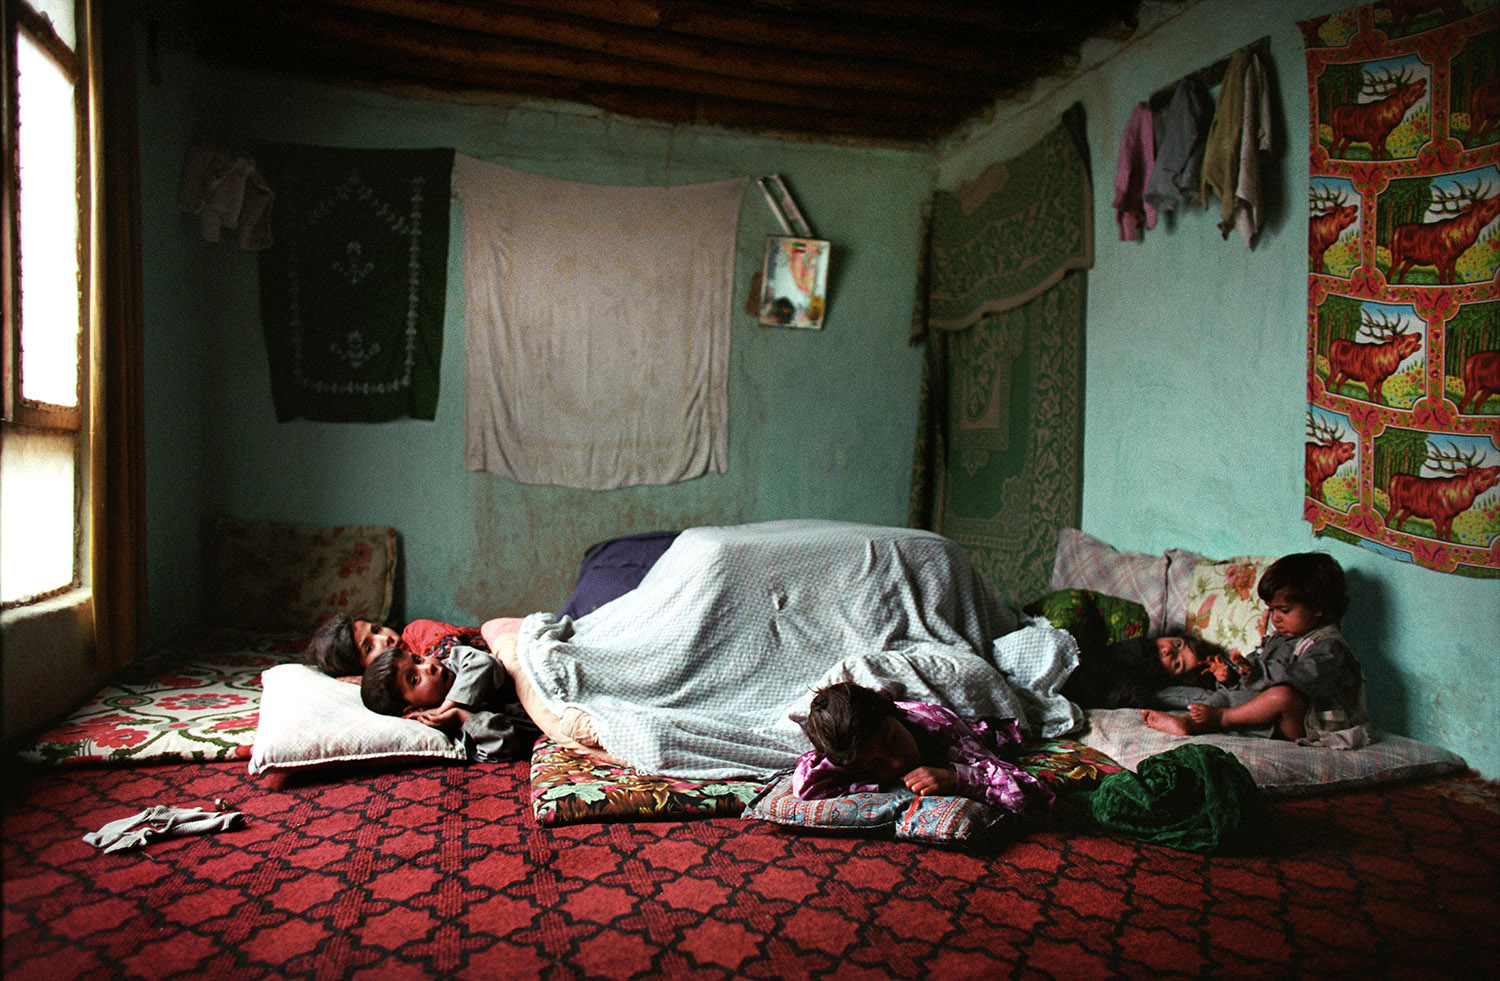 Dans la maison d'une famille afghane, les enfants dorment ensemble par terre sur des coussins et des tapis/